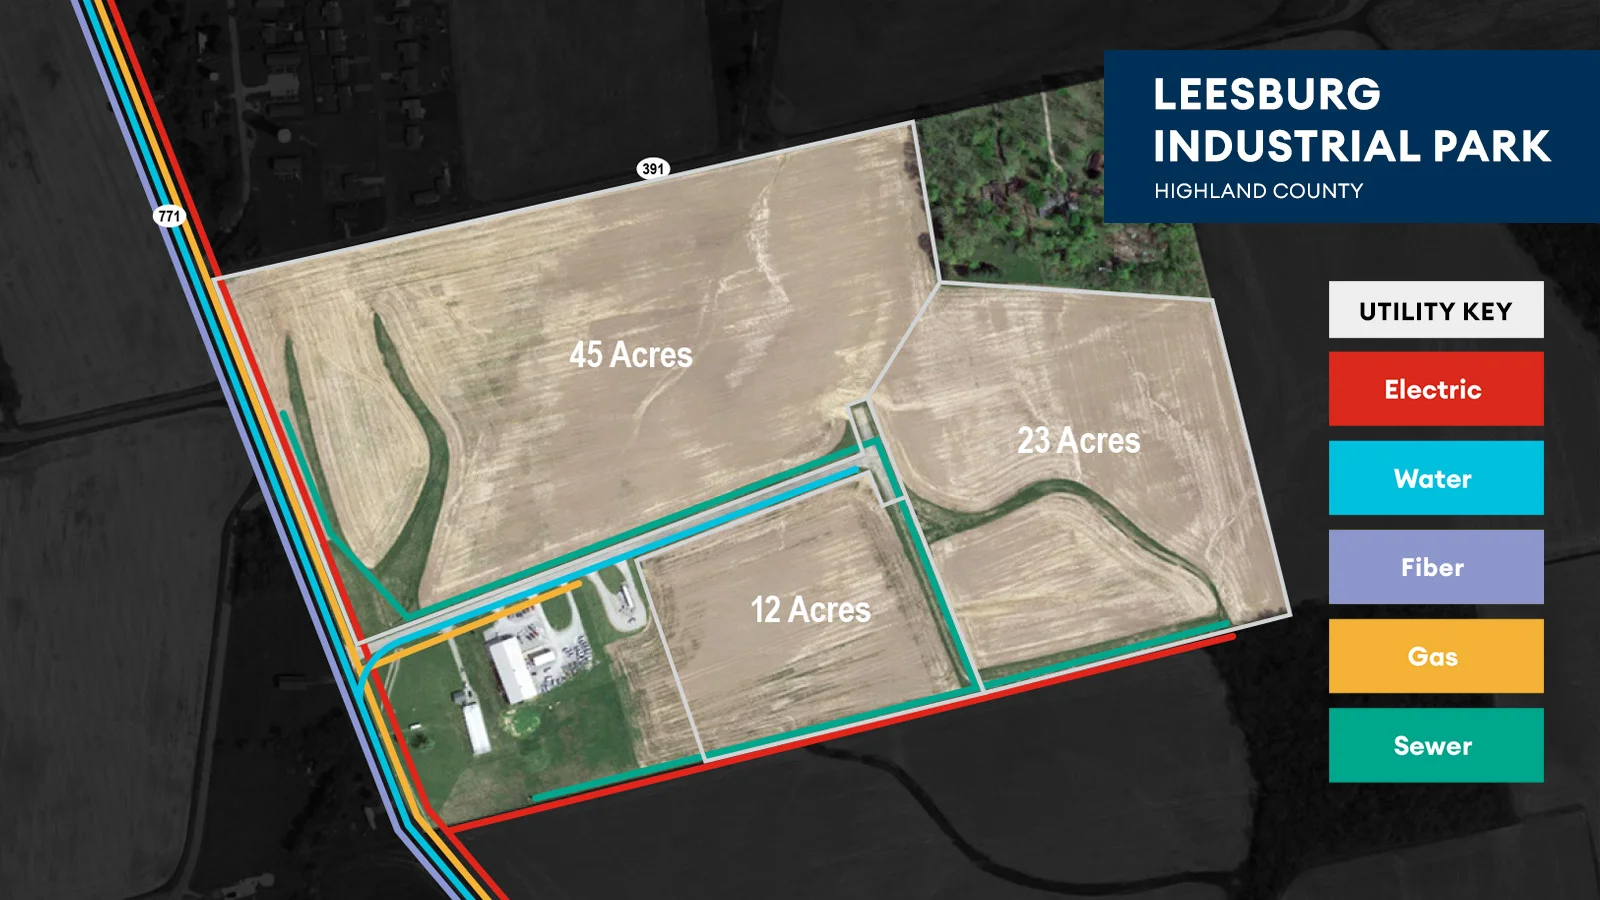 Leesburg Industrial Park Utility Map